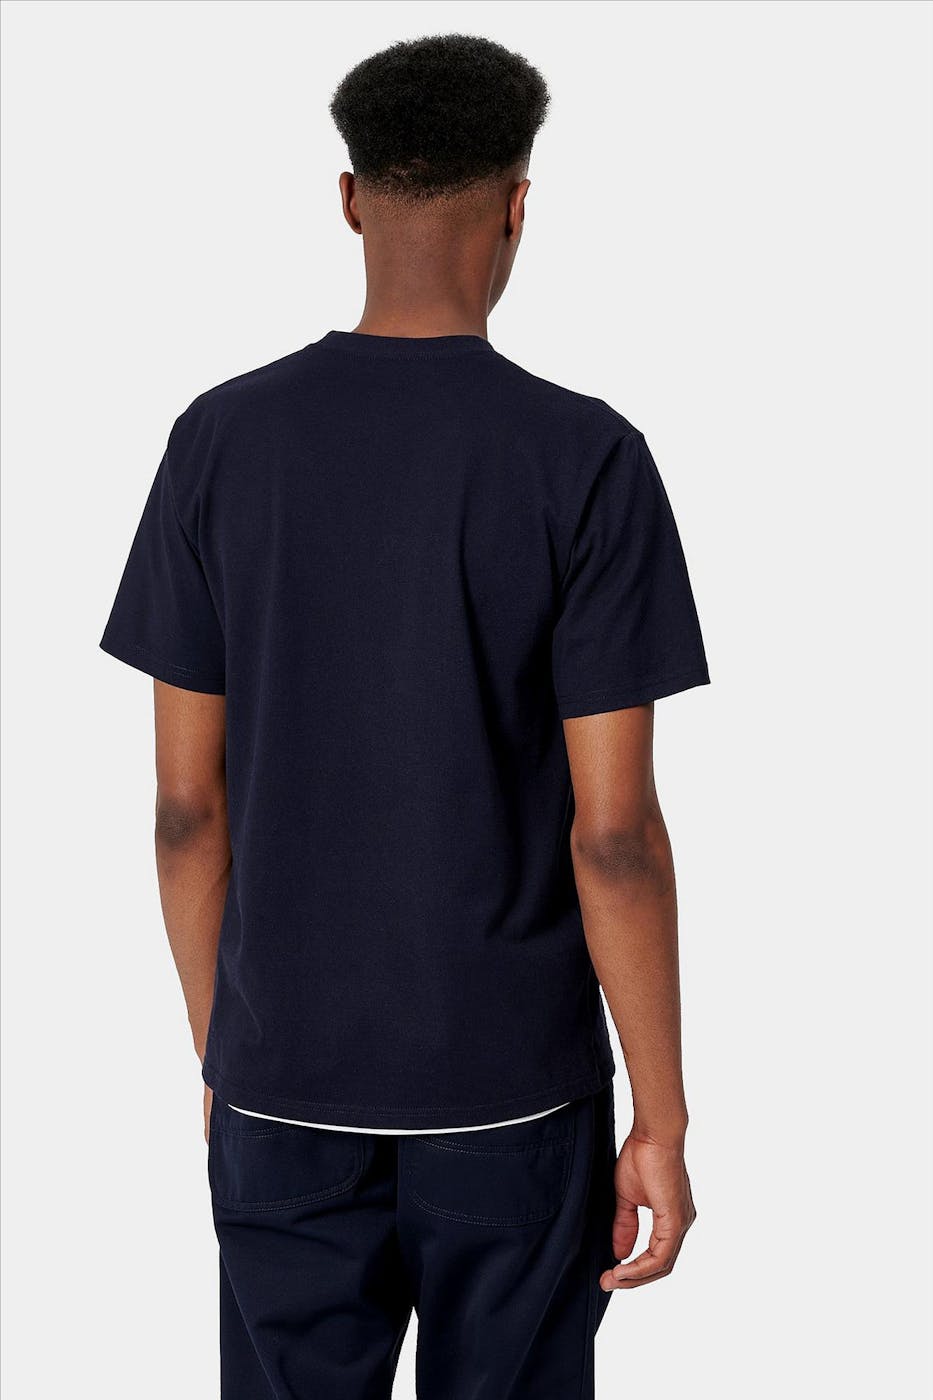 Carhartt WIP - Donkerblauwe College T-shirt